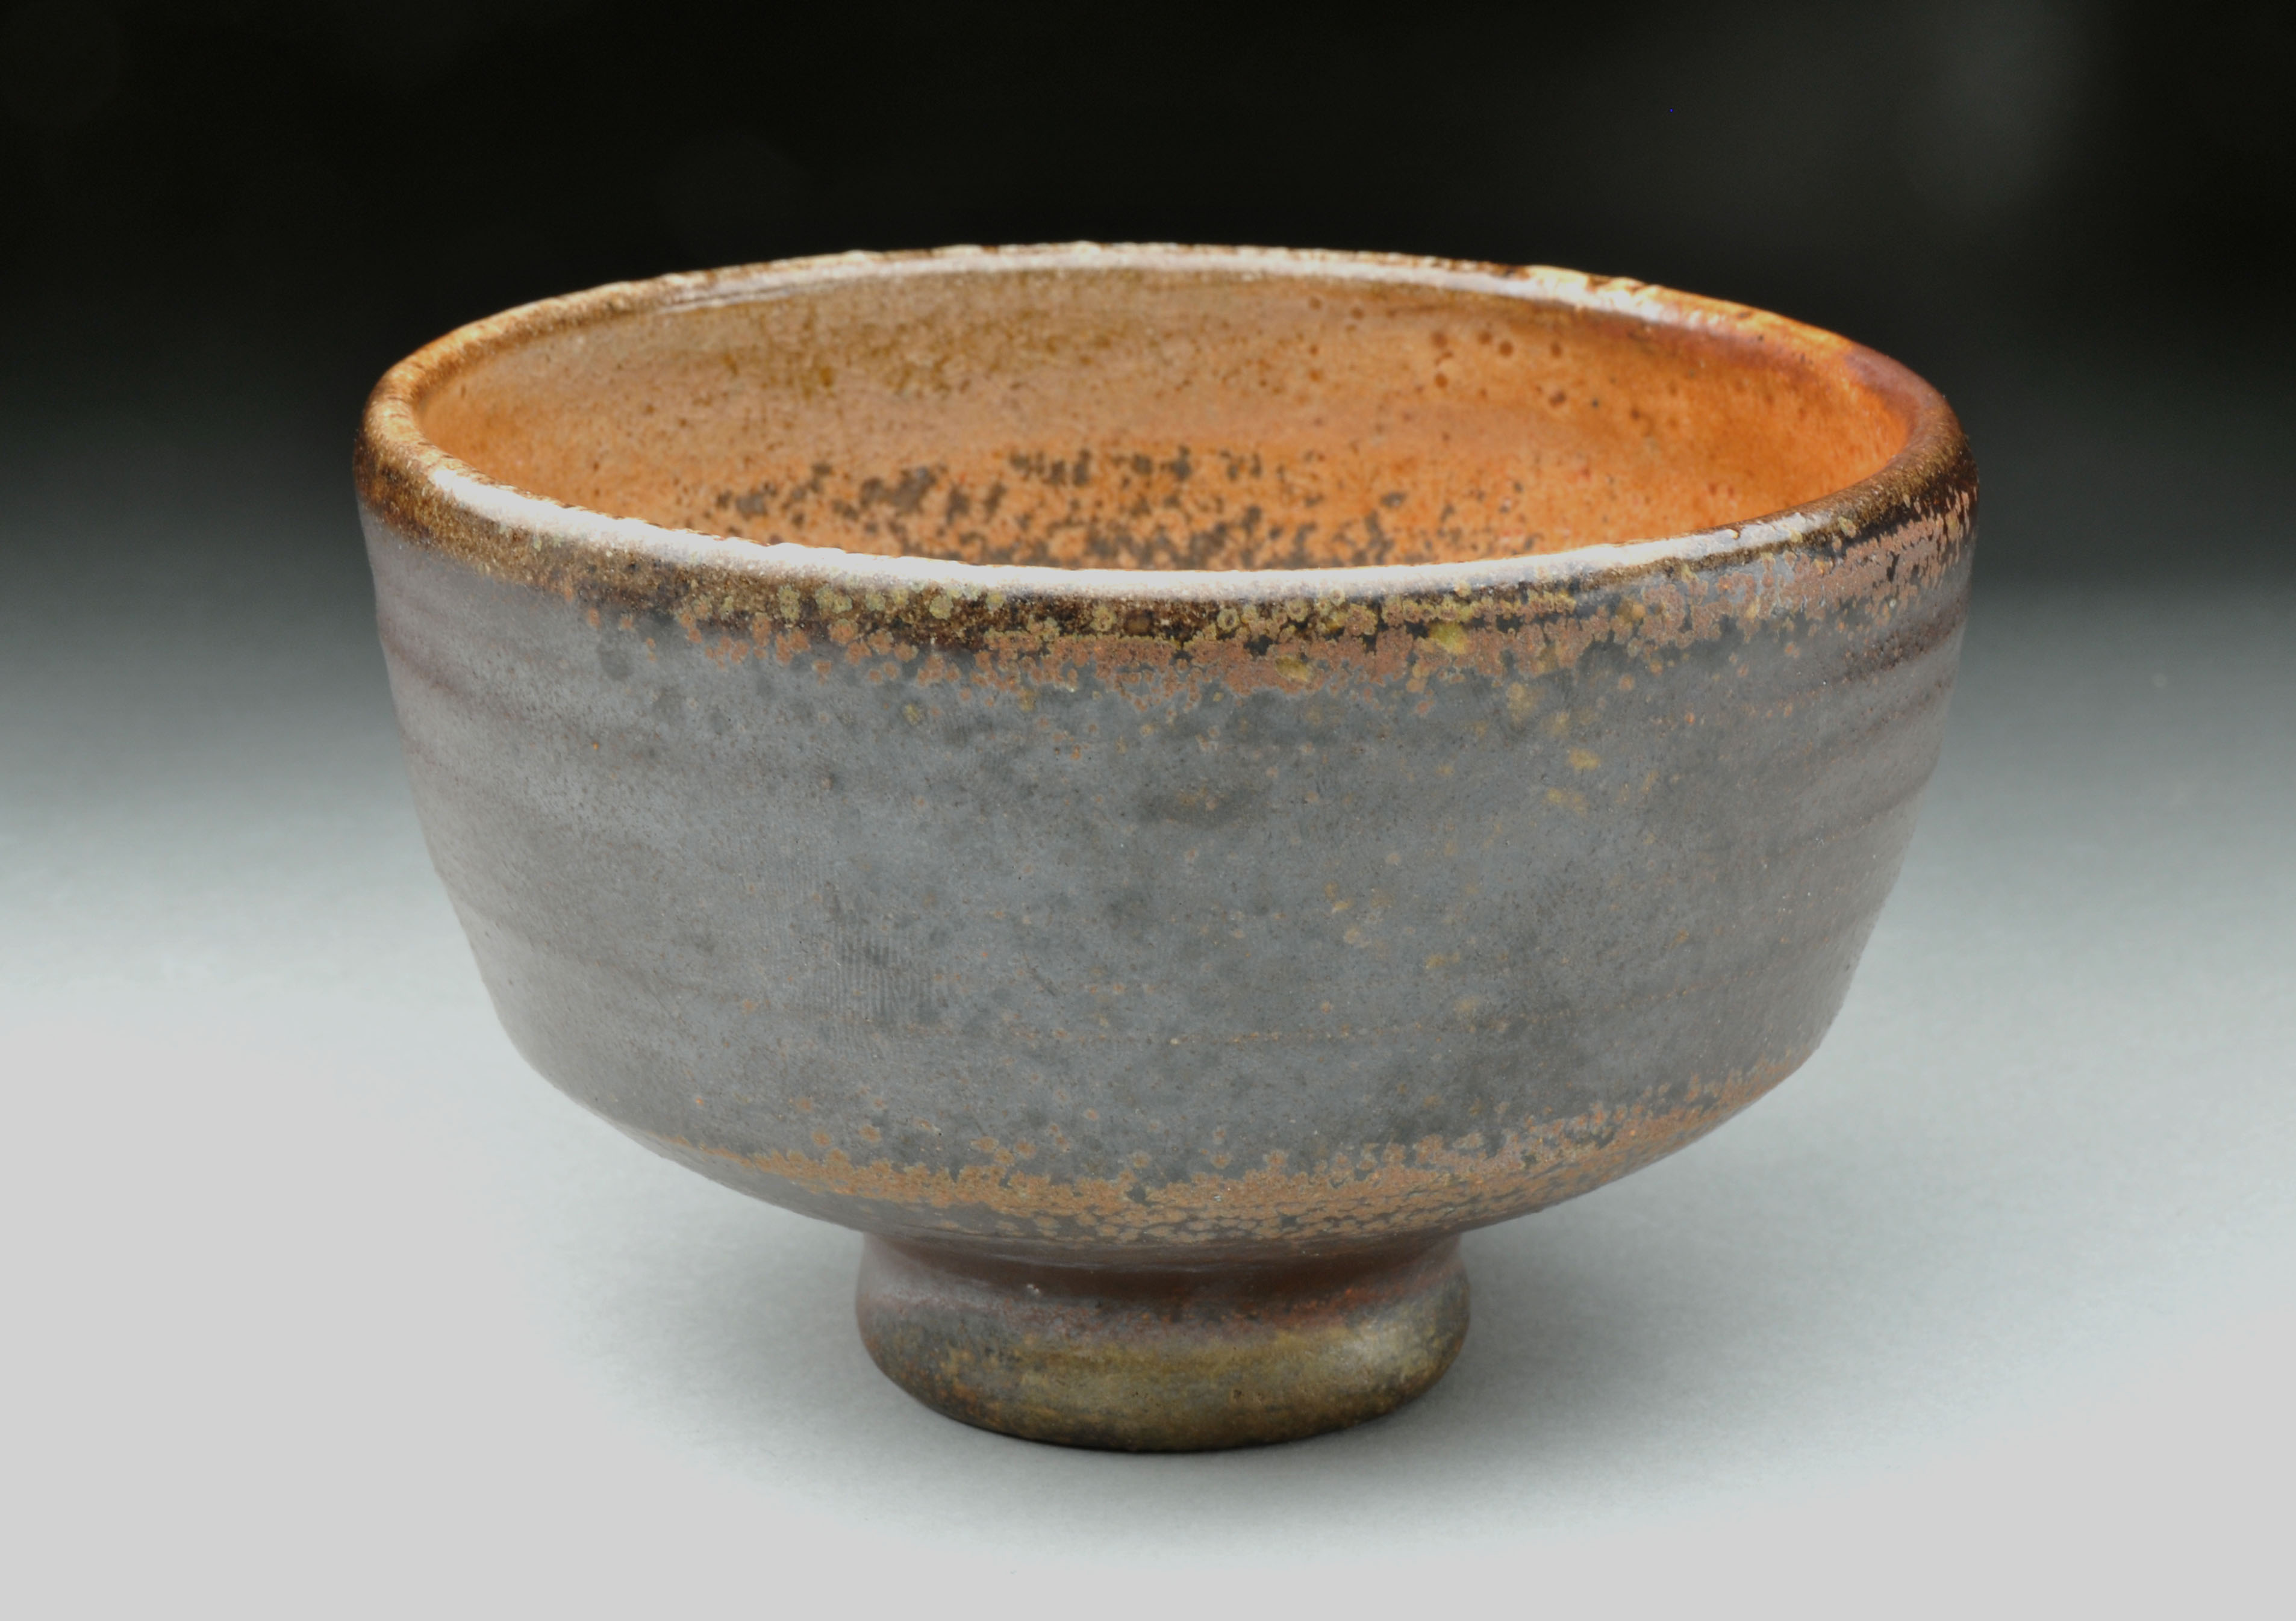 First cup. Керамика Японии 15-17 веков. Древняя посуда. Древняя японская посуда. Посуда японская в древности.